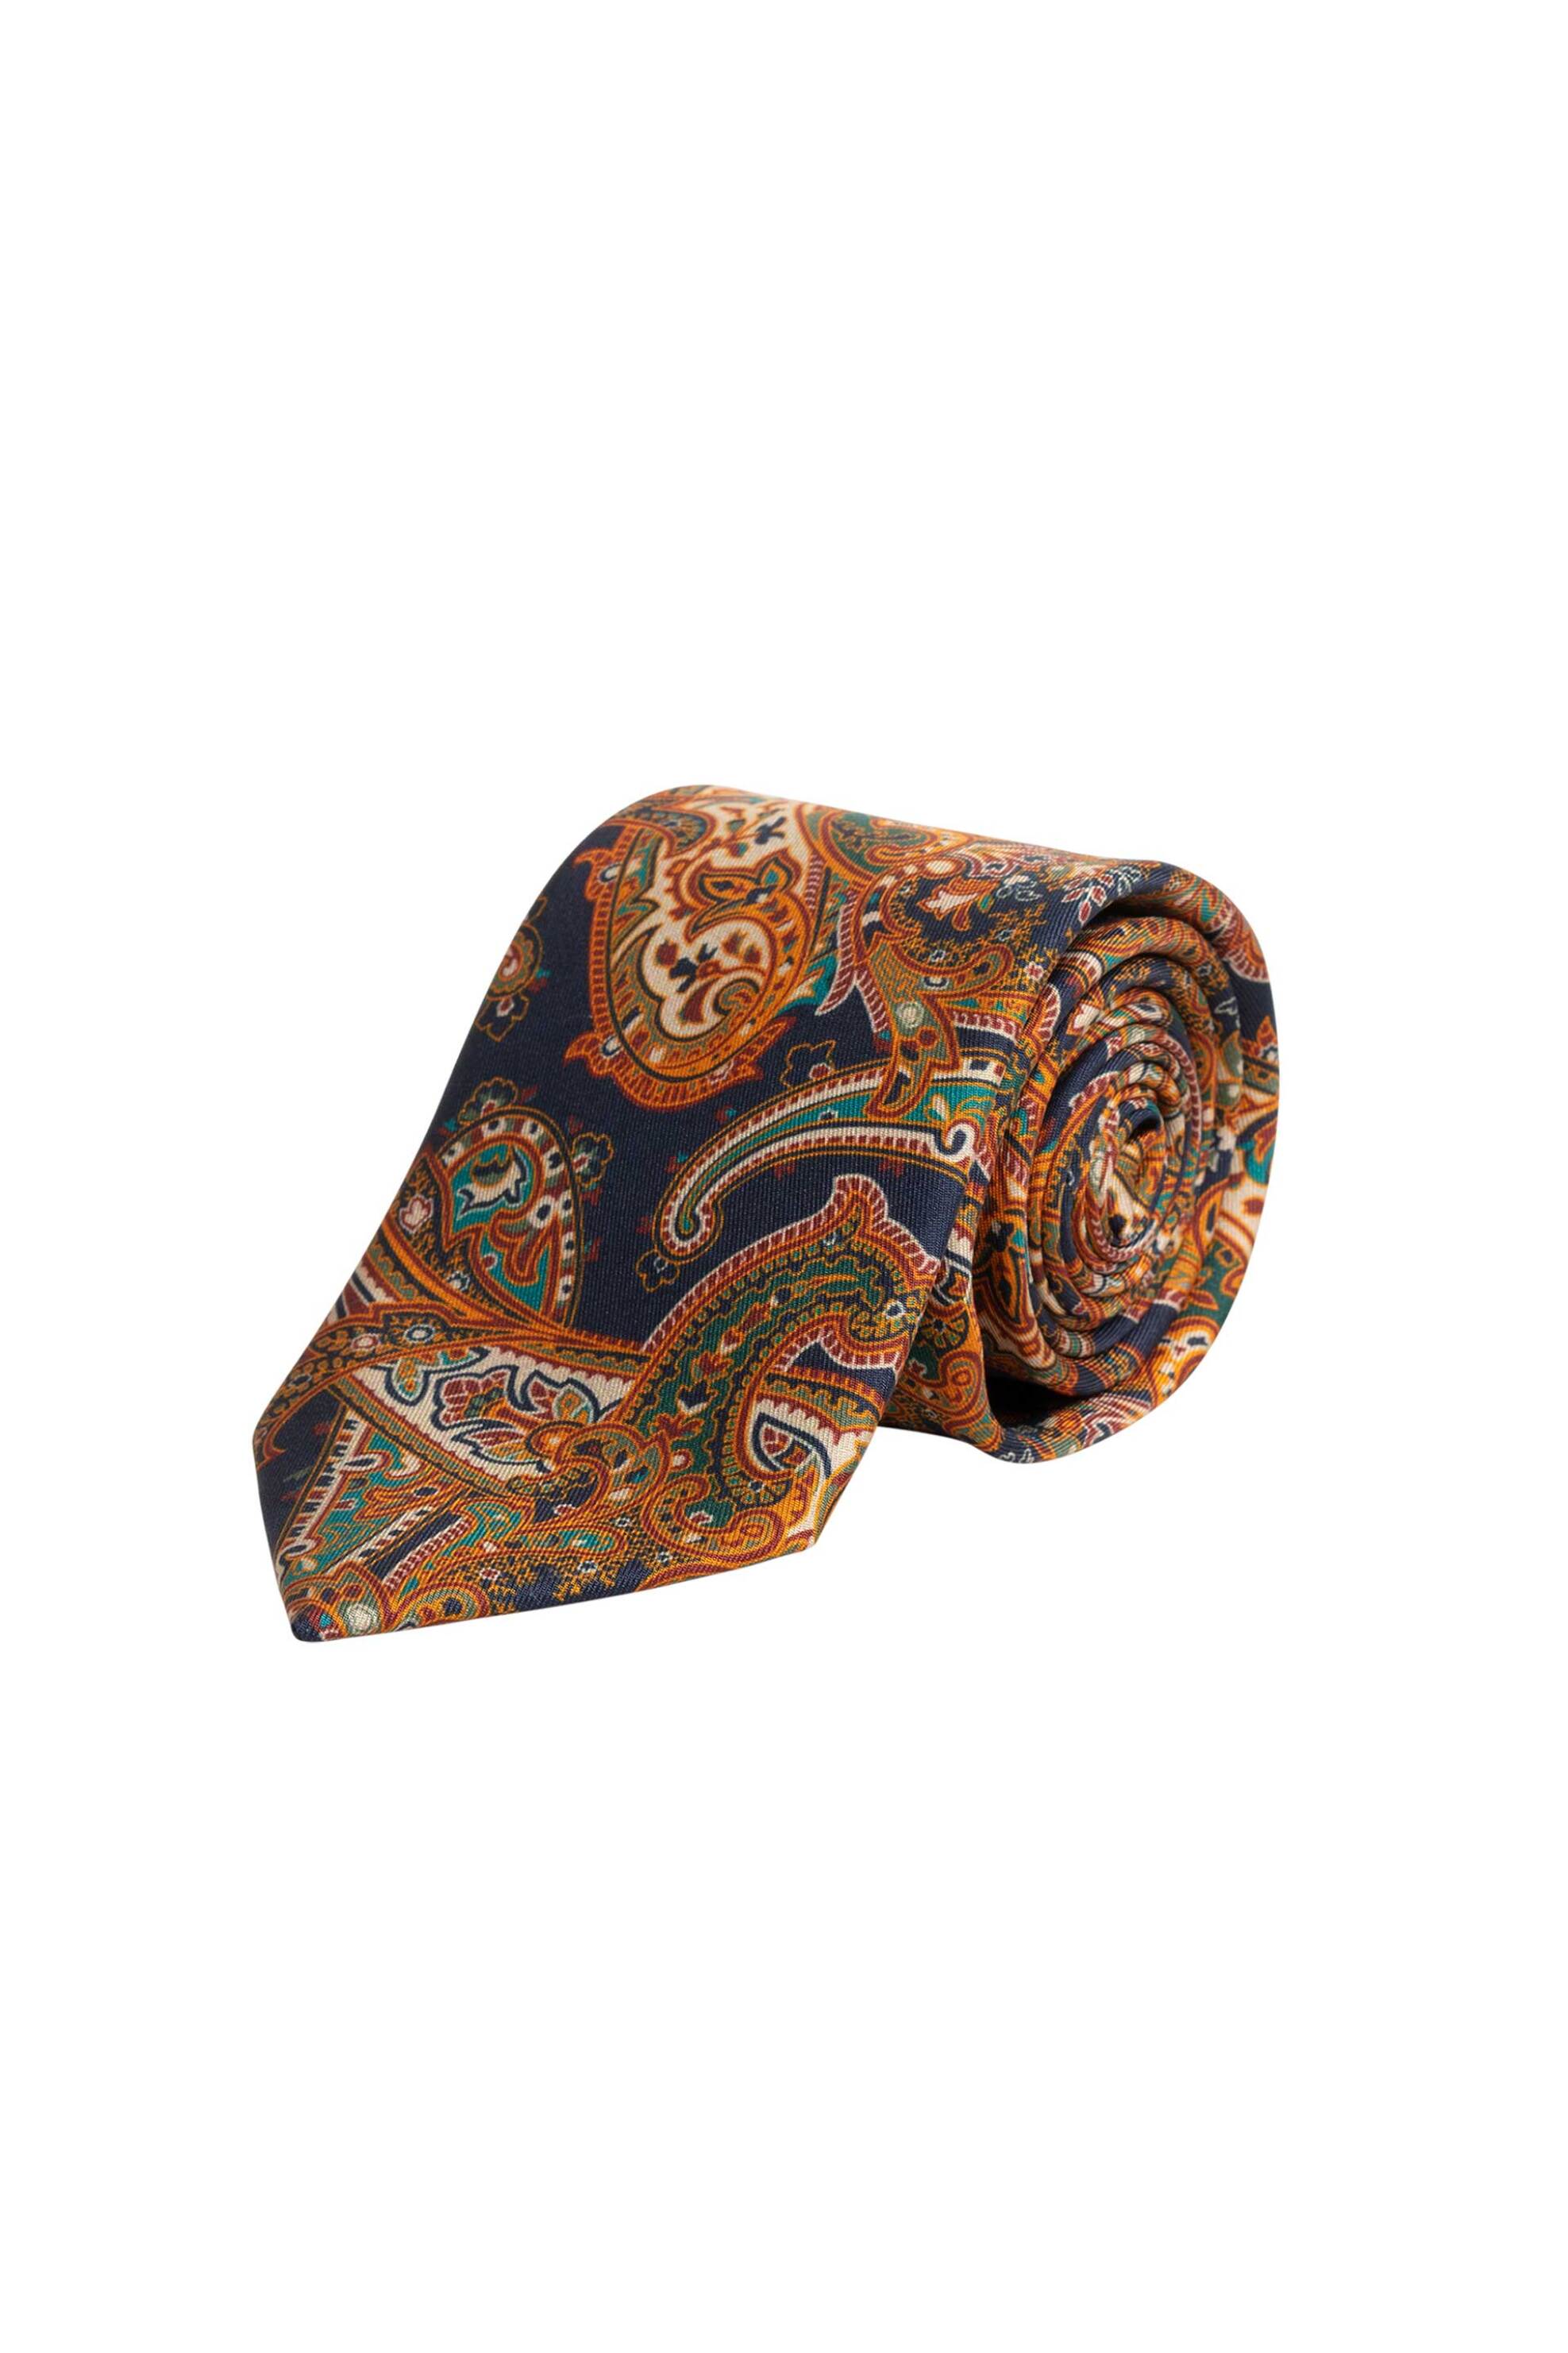 Ανδρική Μόδα > Ανδρικά Αξεσουάρ > Ανδρικές Γραβάτες & Παπιγιόν Gant ανδρική μεταξωτή γραβάτα με paisley pattern - 9950102 Καφέ